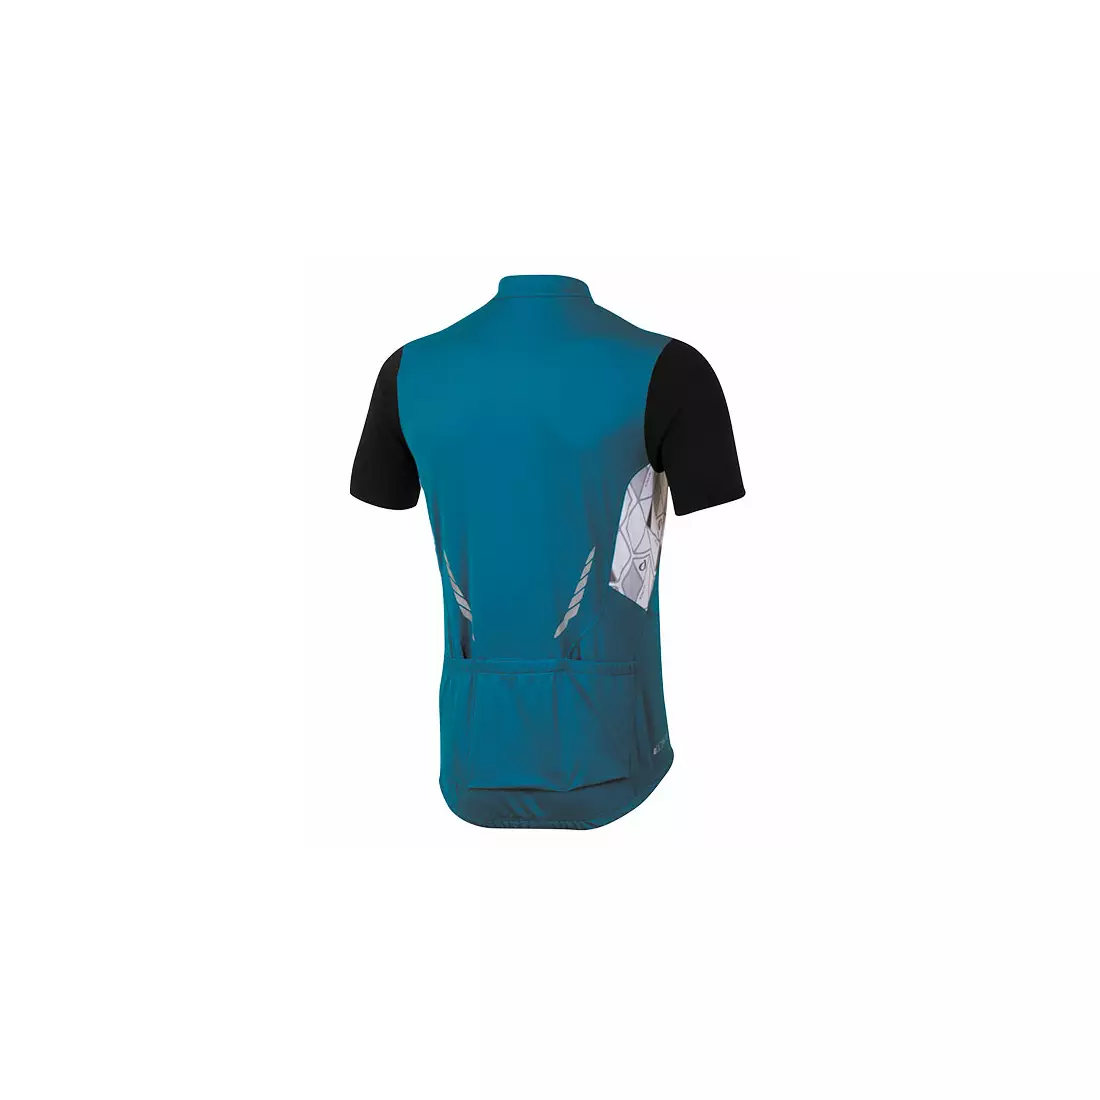 Pánsky cyklistický dres PEARL IZUMI ATTACK, modrý 11121405-4DI